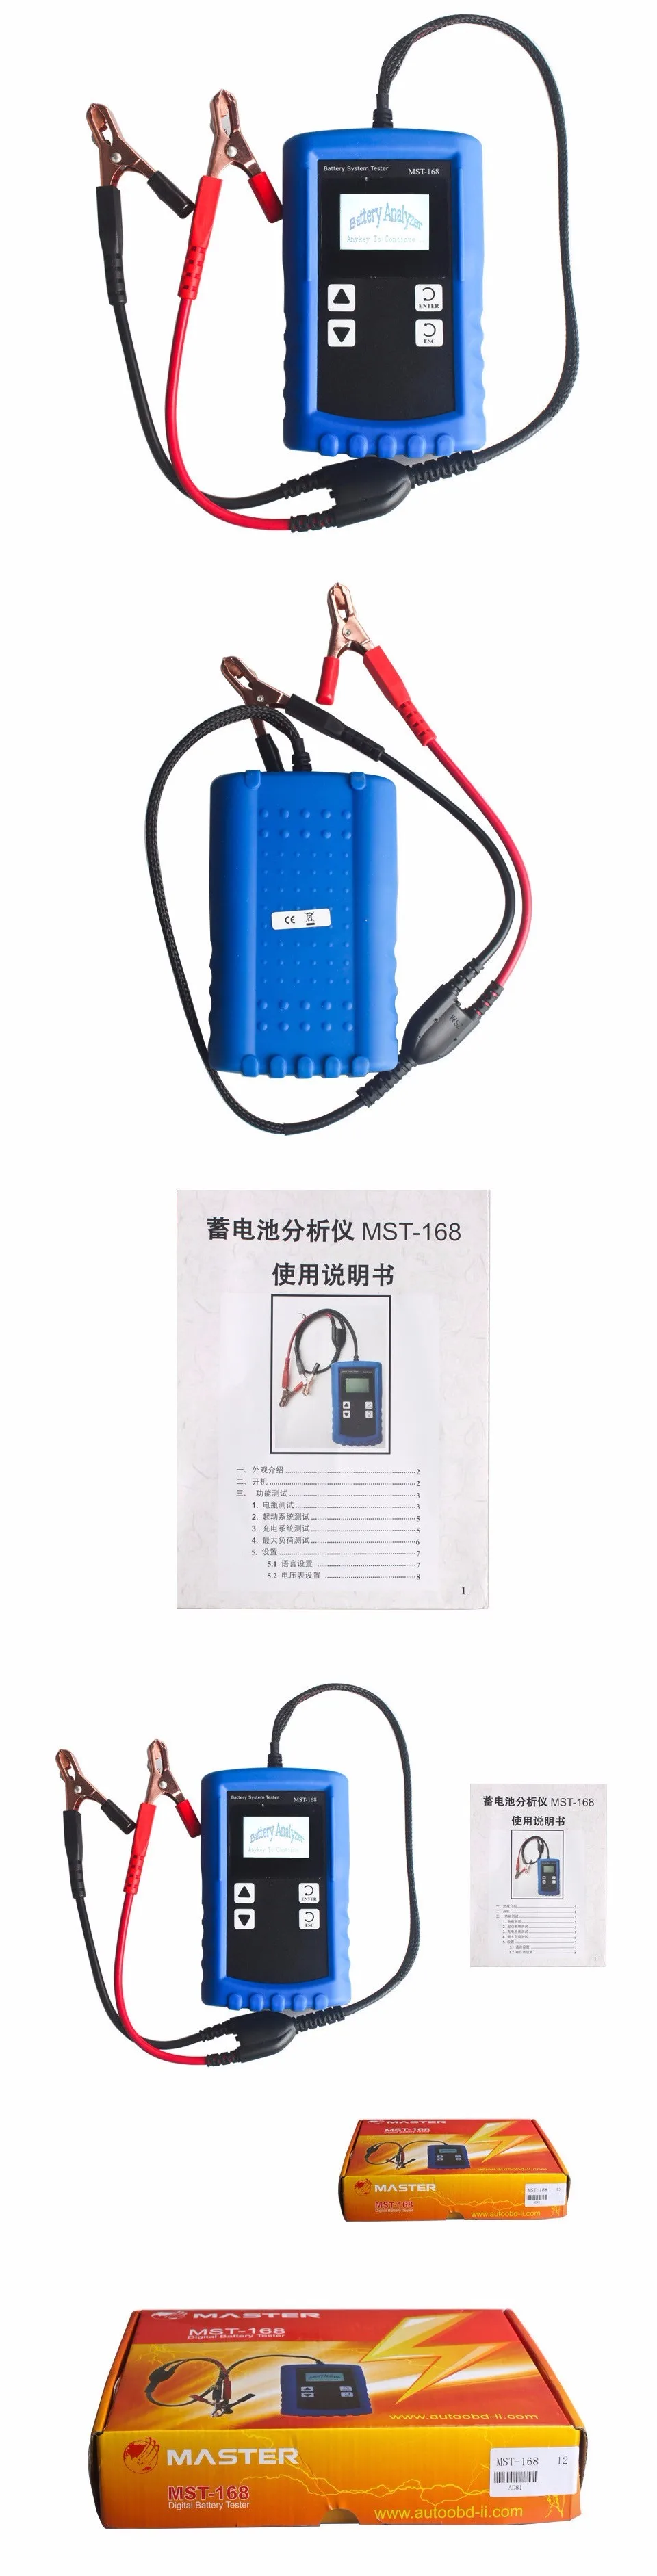 Автомобильные Батарея анализатор MST-168 автомобильной анализатор инструменты цифровой MST-168